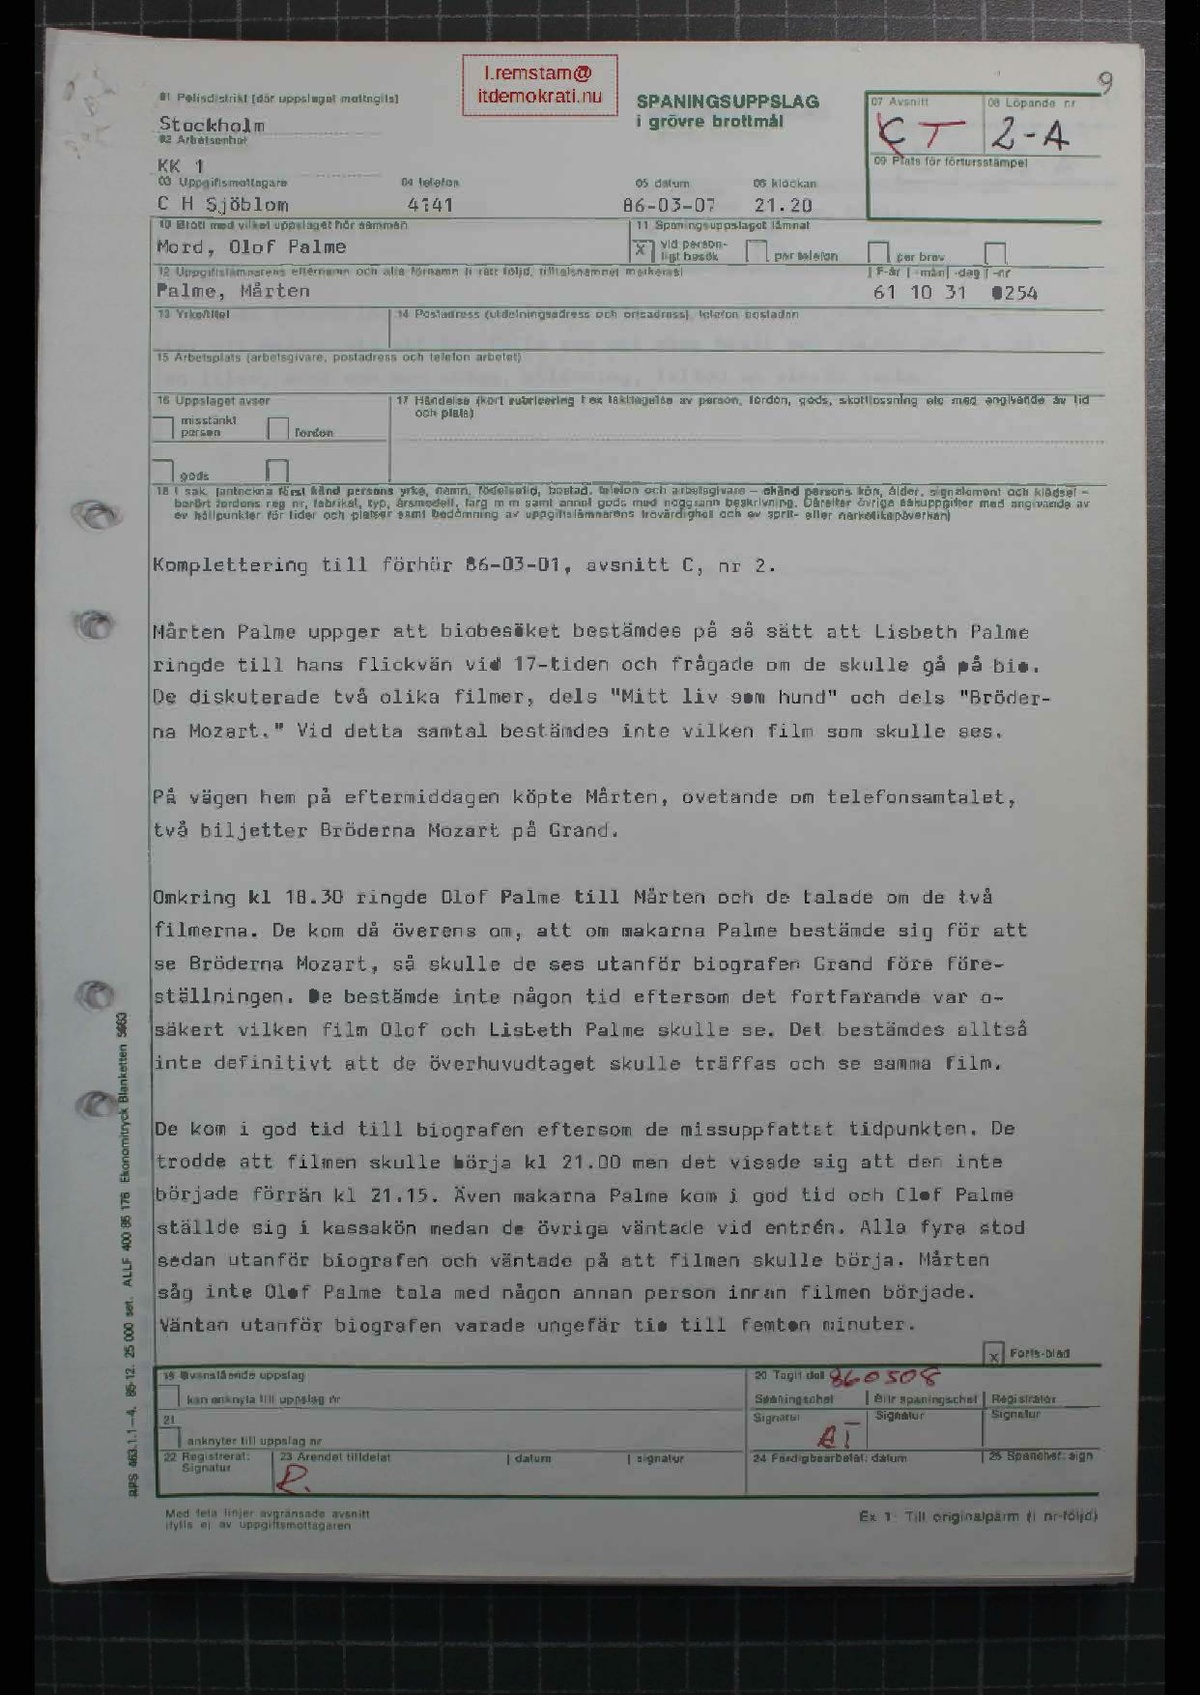 Pol-1986-03-07 2120 T2-00-A Mårten Palme om biobesök.pdf